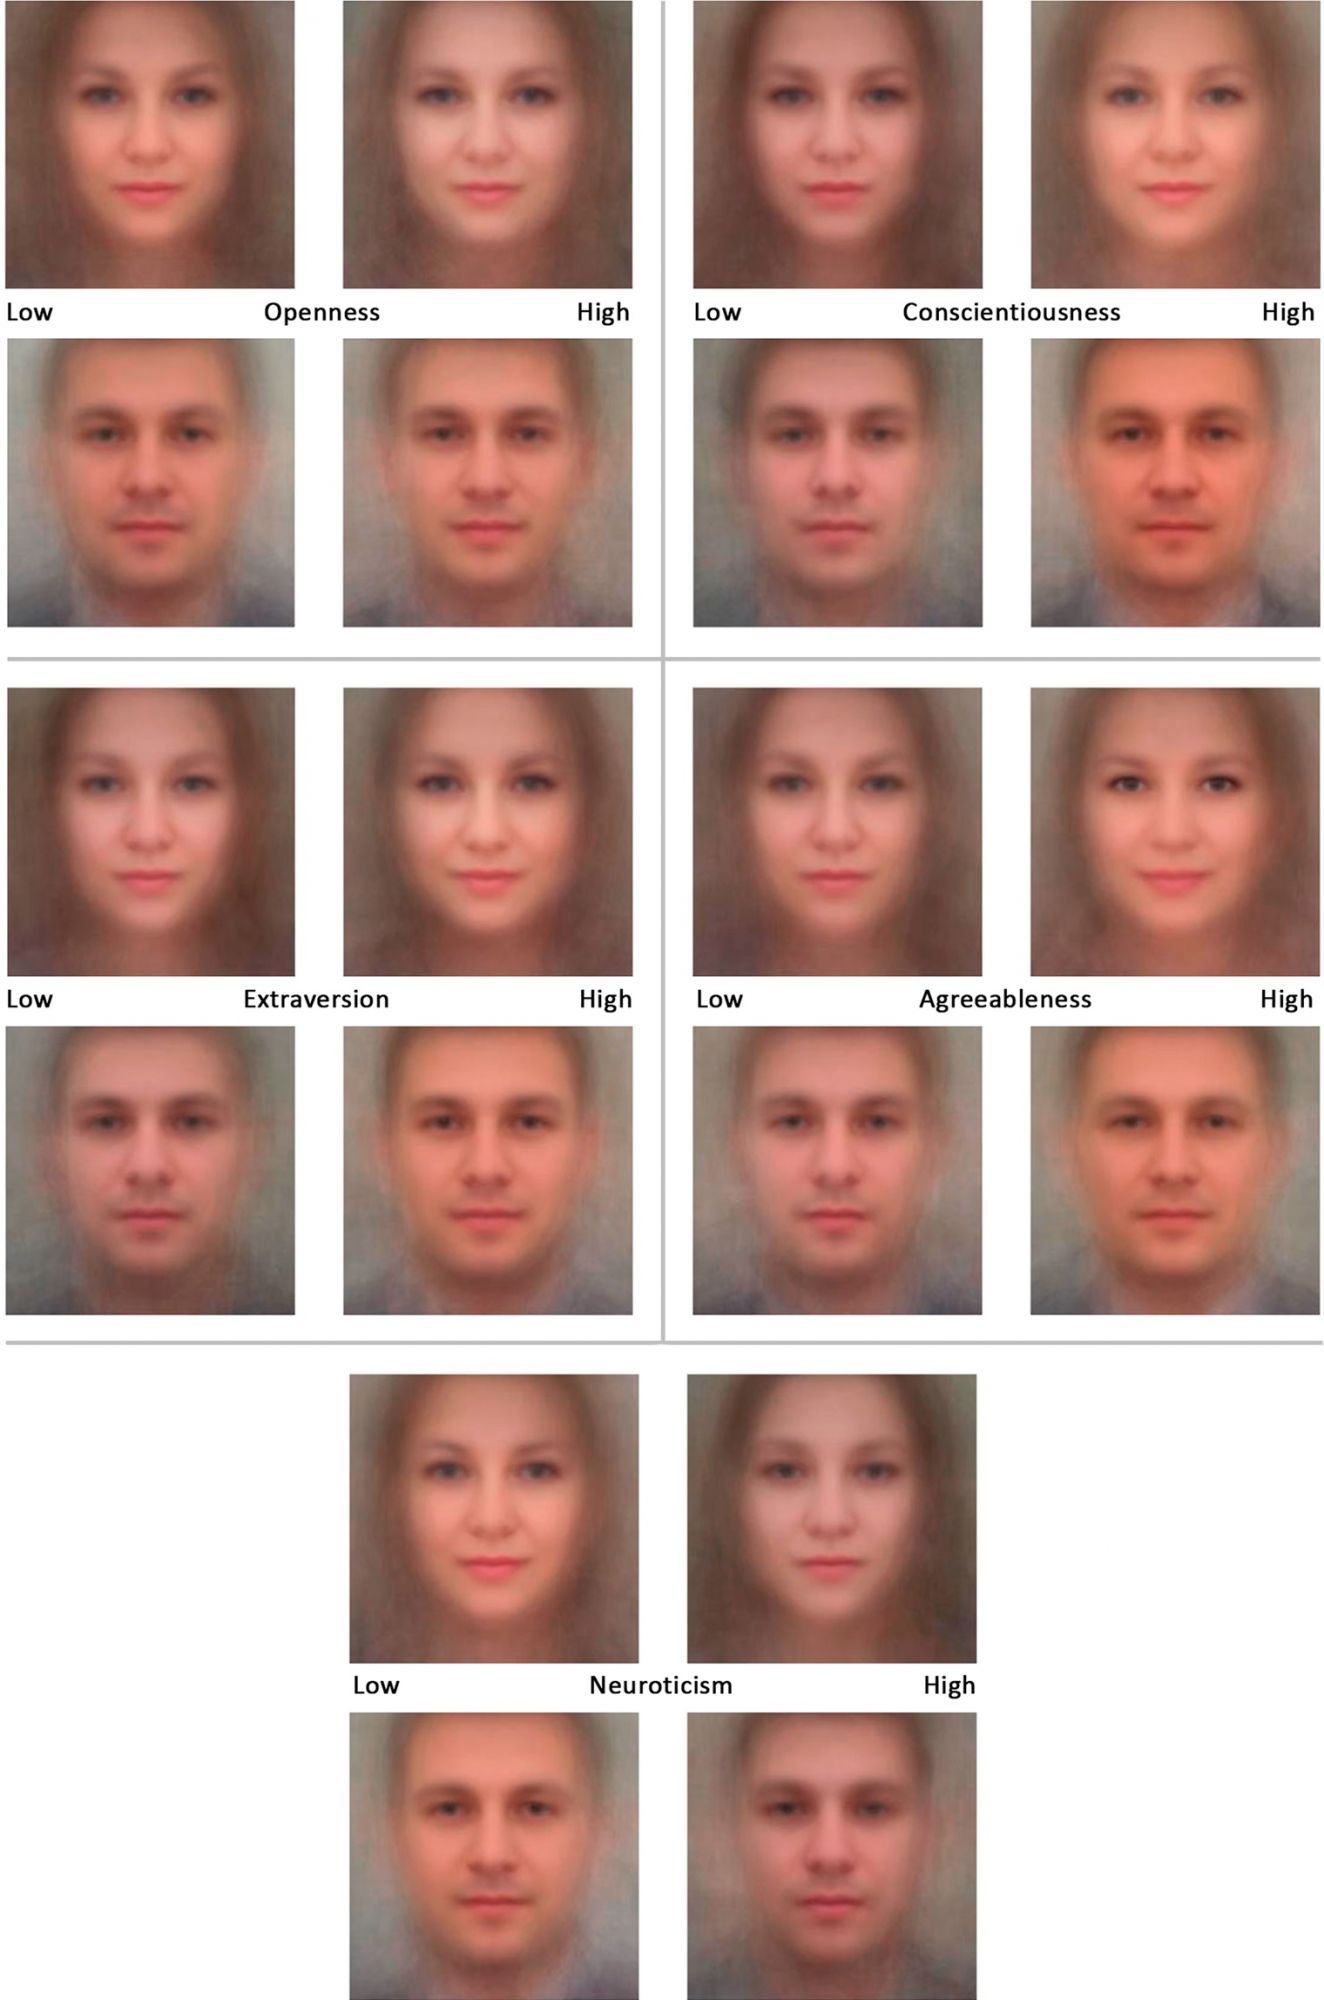 Иллюстрация выше показывает, как, по мнению нейросети, разные характеристики личности проявляются в чертах лица одних и тех же людей